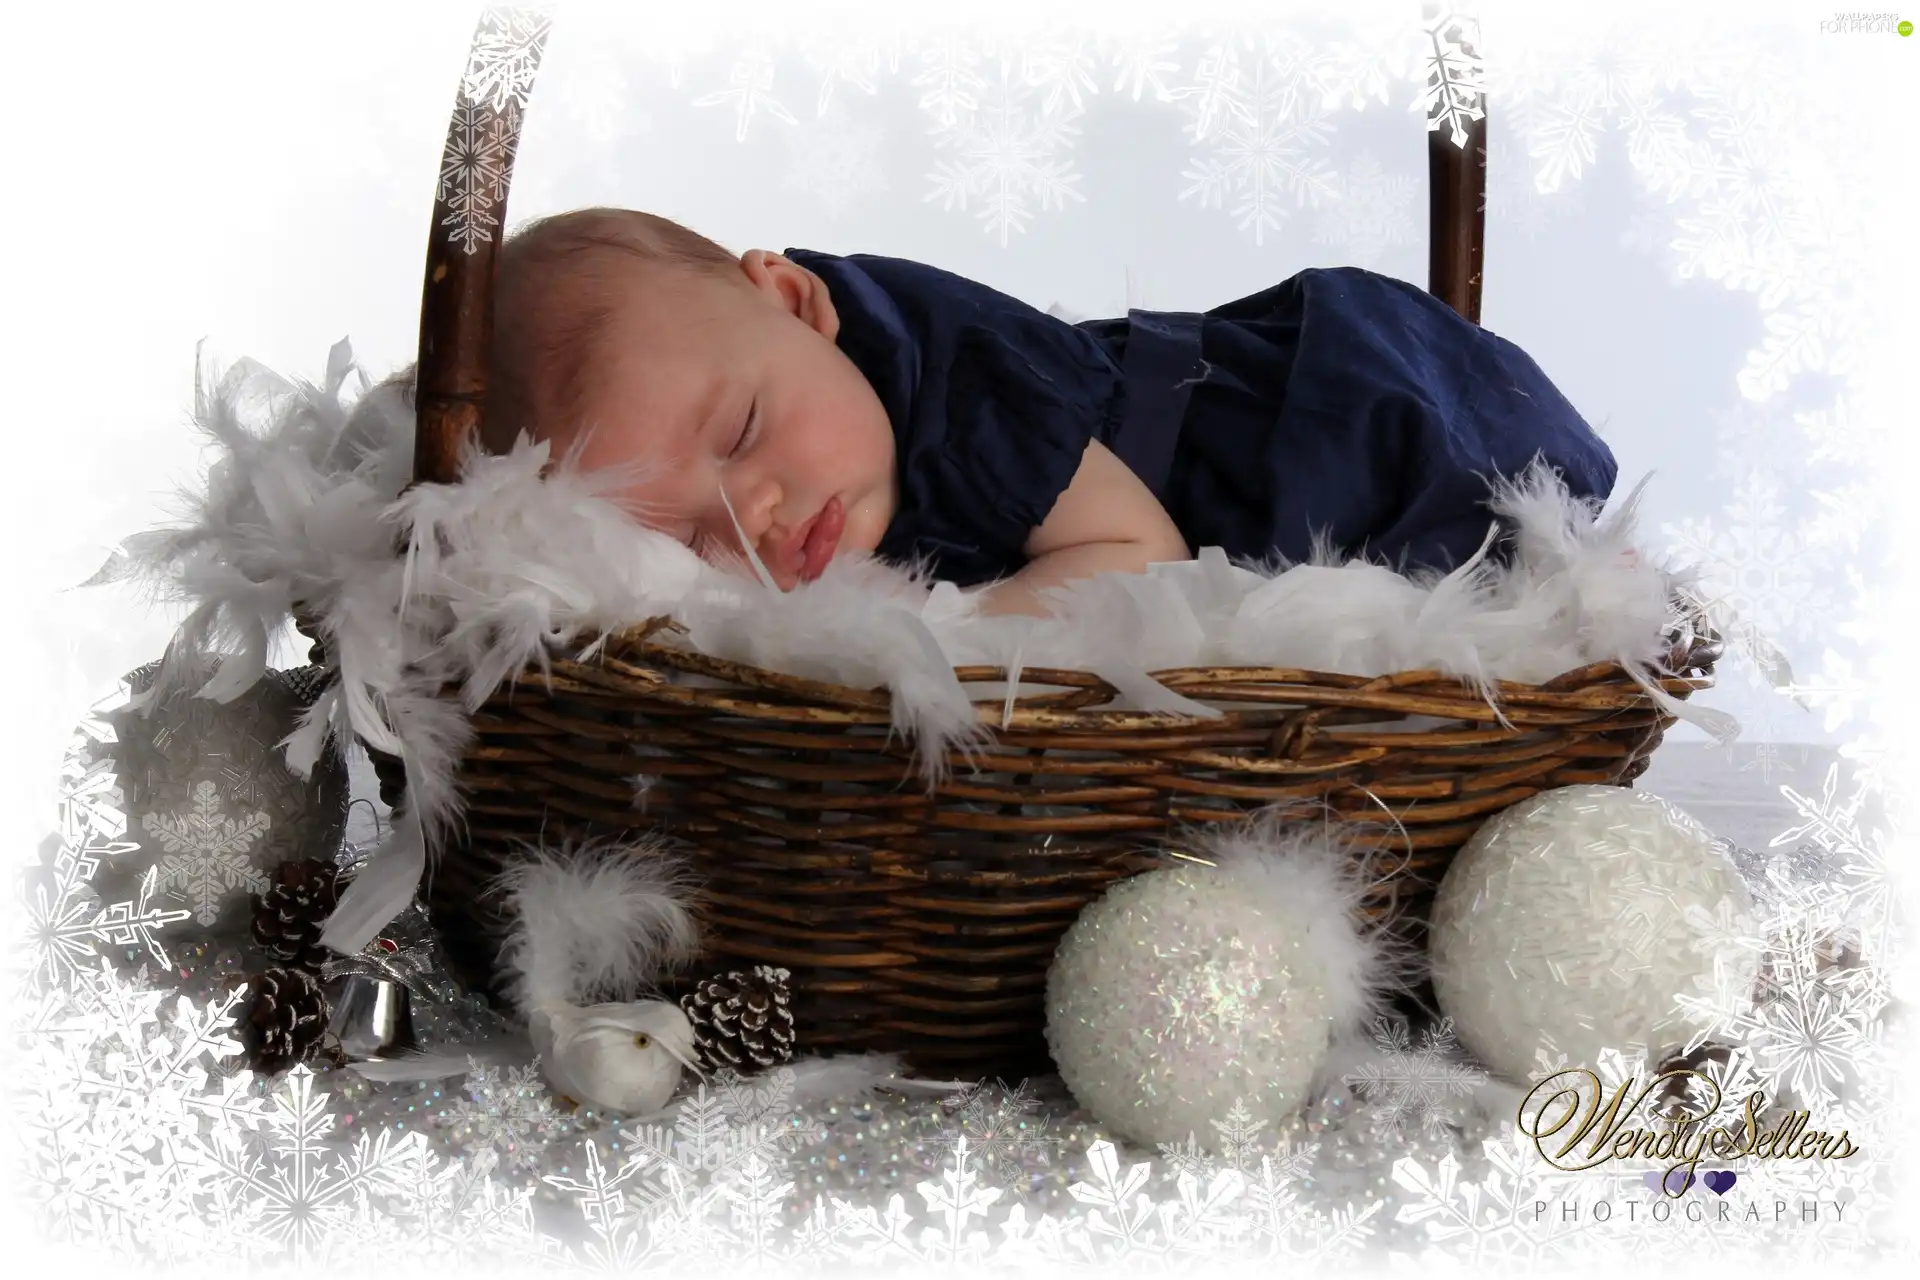 Sleeping, basket, baubles, Baby